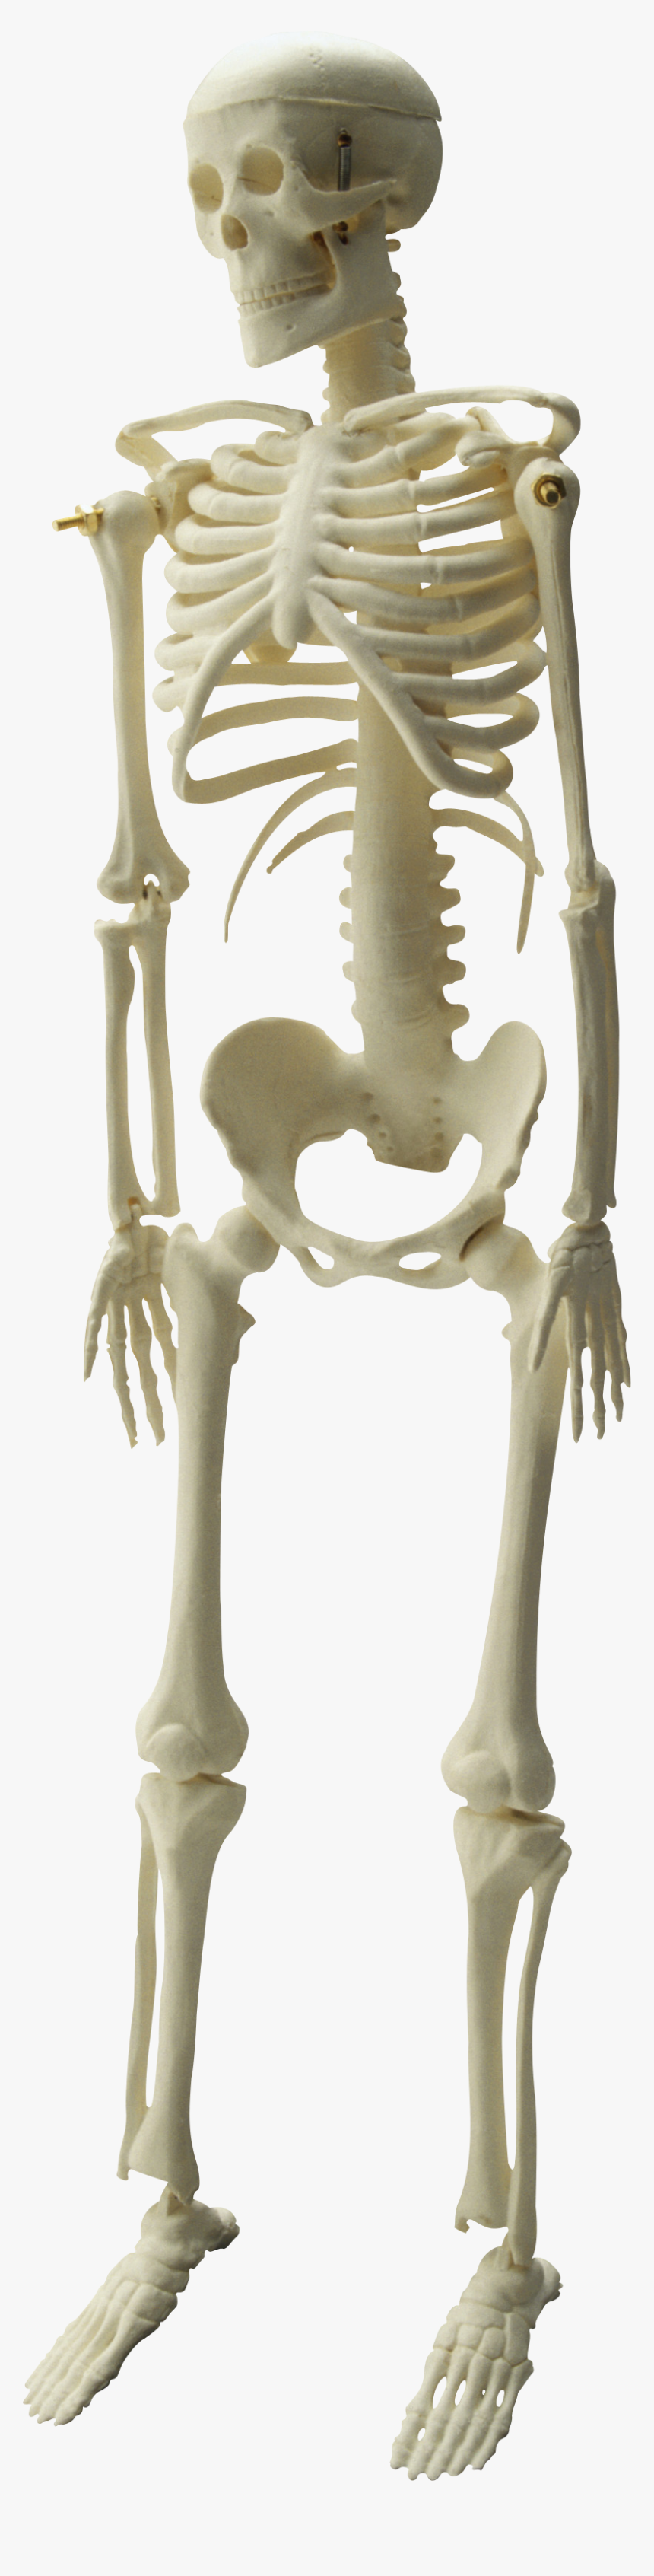 Skeleton Png Images Image - Kankal Photo Png Hd, Transparent Png, Free Download